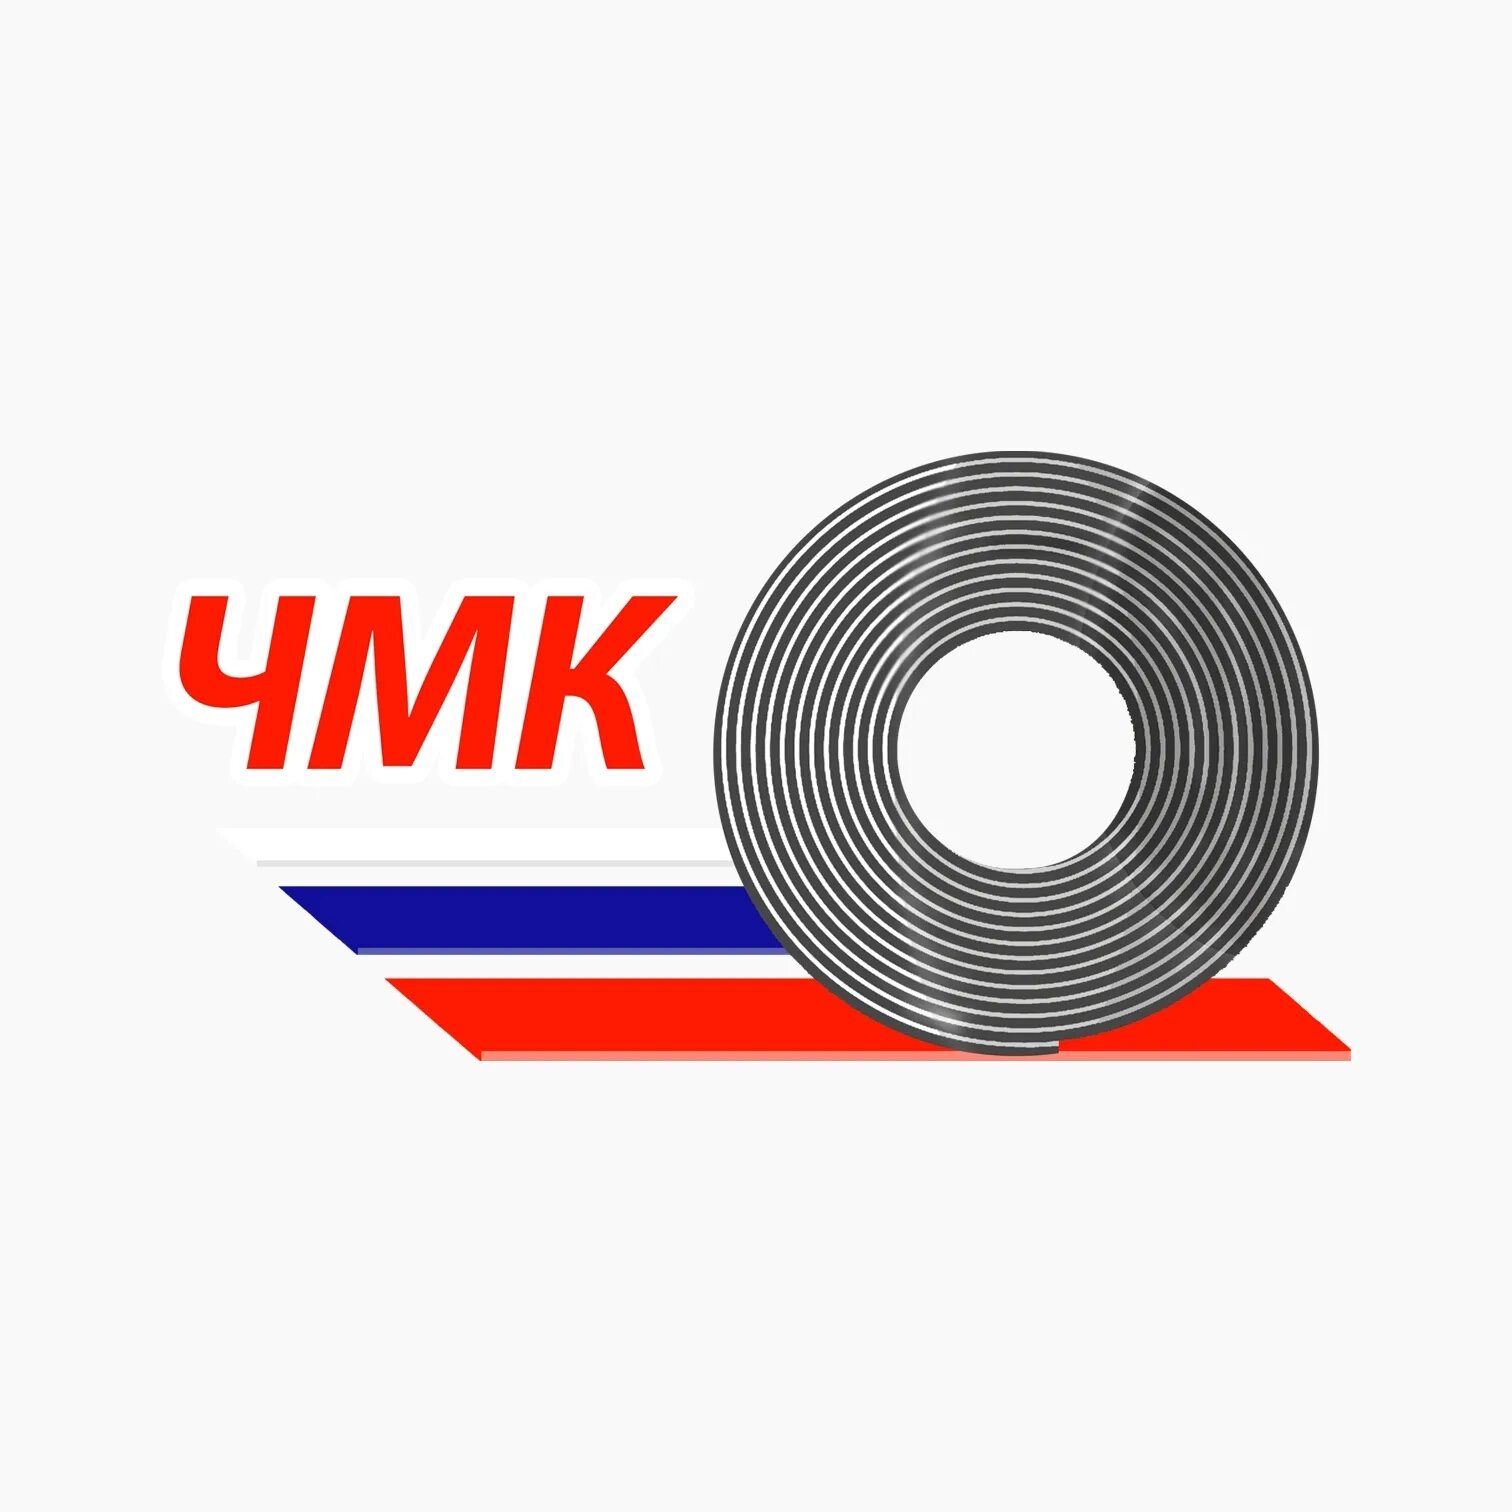 Сайт череповецкого металлургического колледжа. Череповецкий металлургический колледж. ЧМК логотип. Логотип ЧМК Череповец.